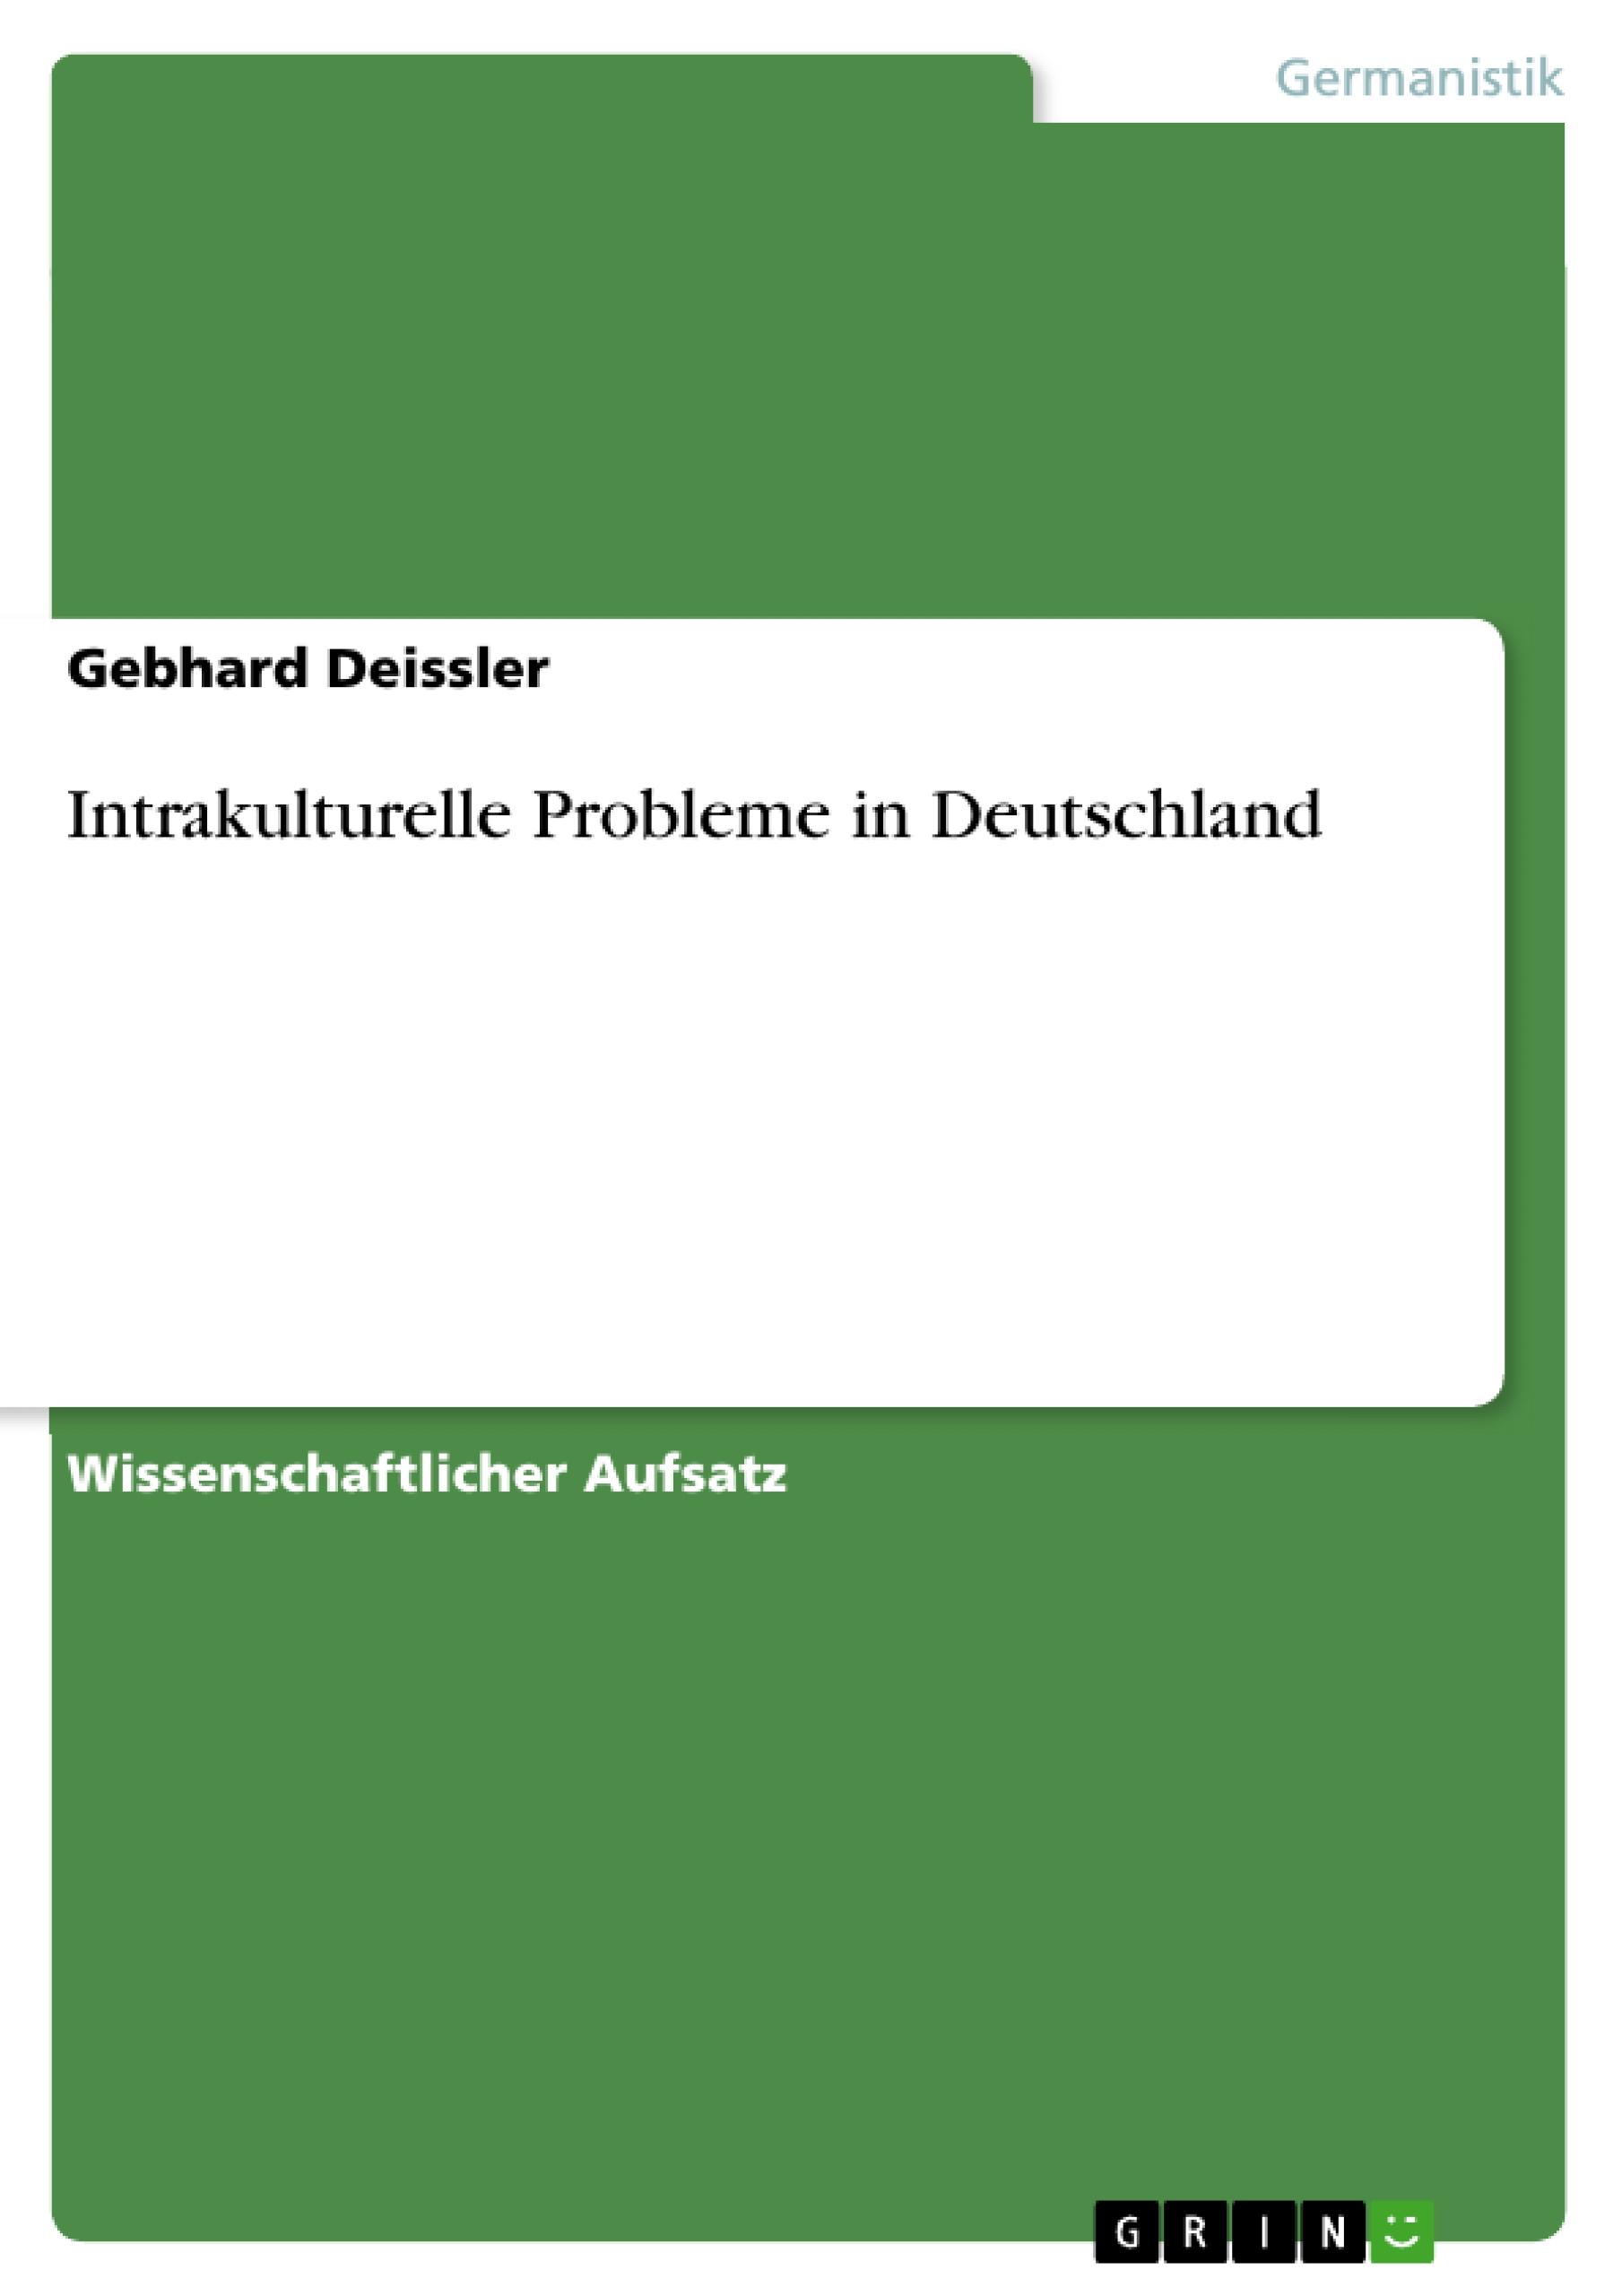 Intrakulturelle Probleme in Deutschland - Deissler, Gebhard